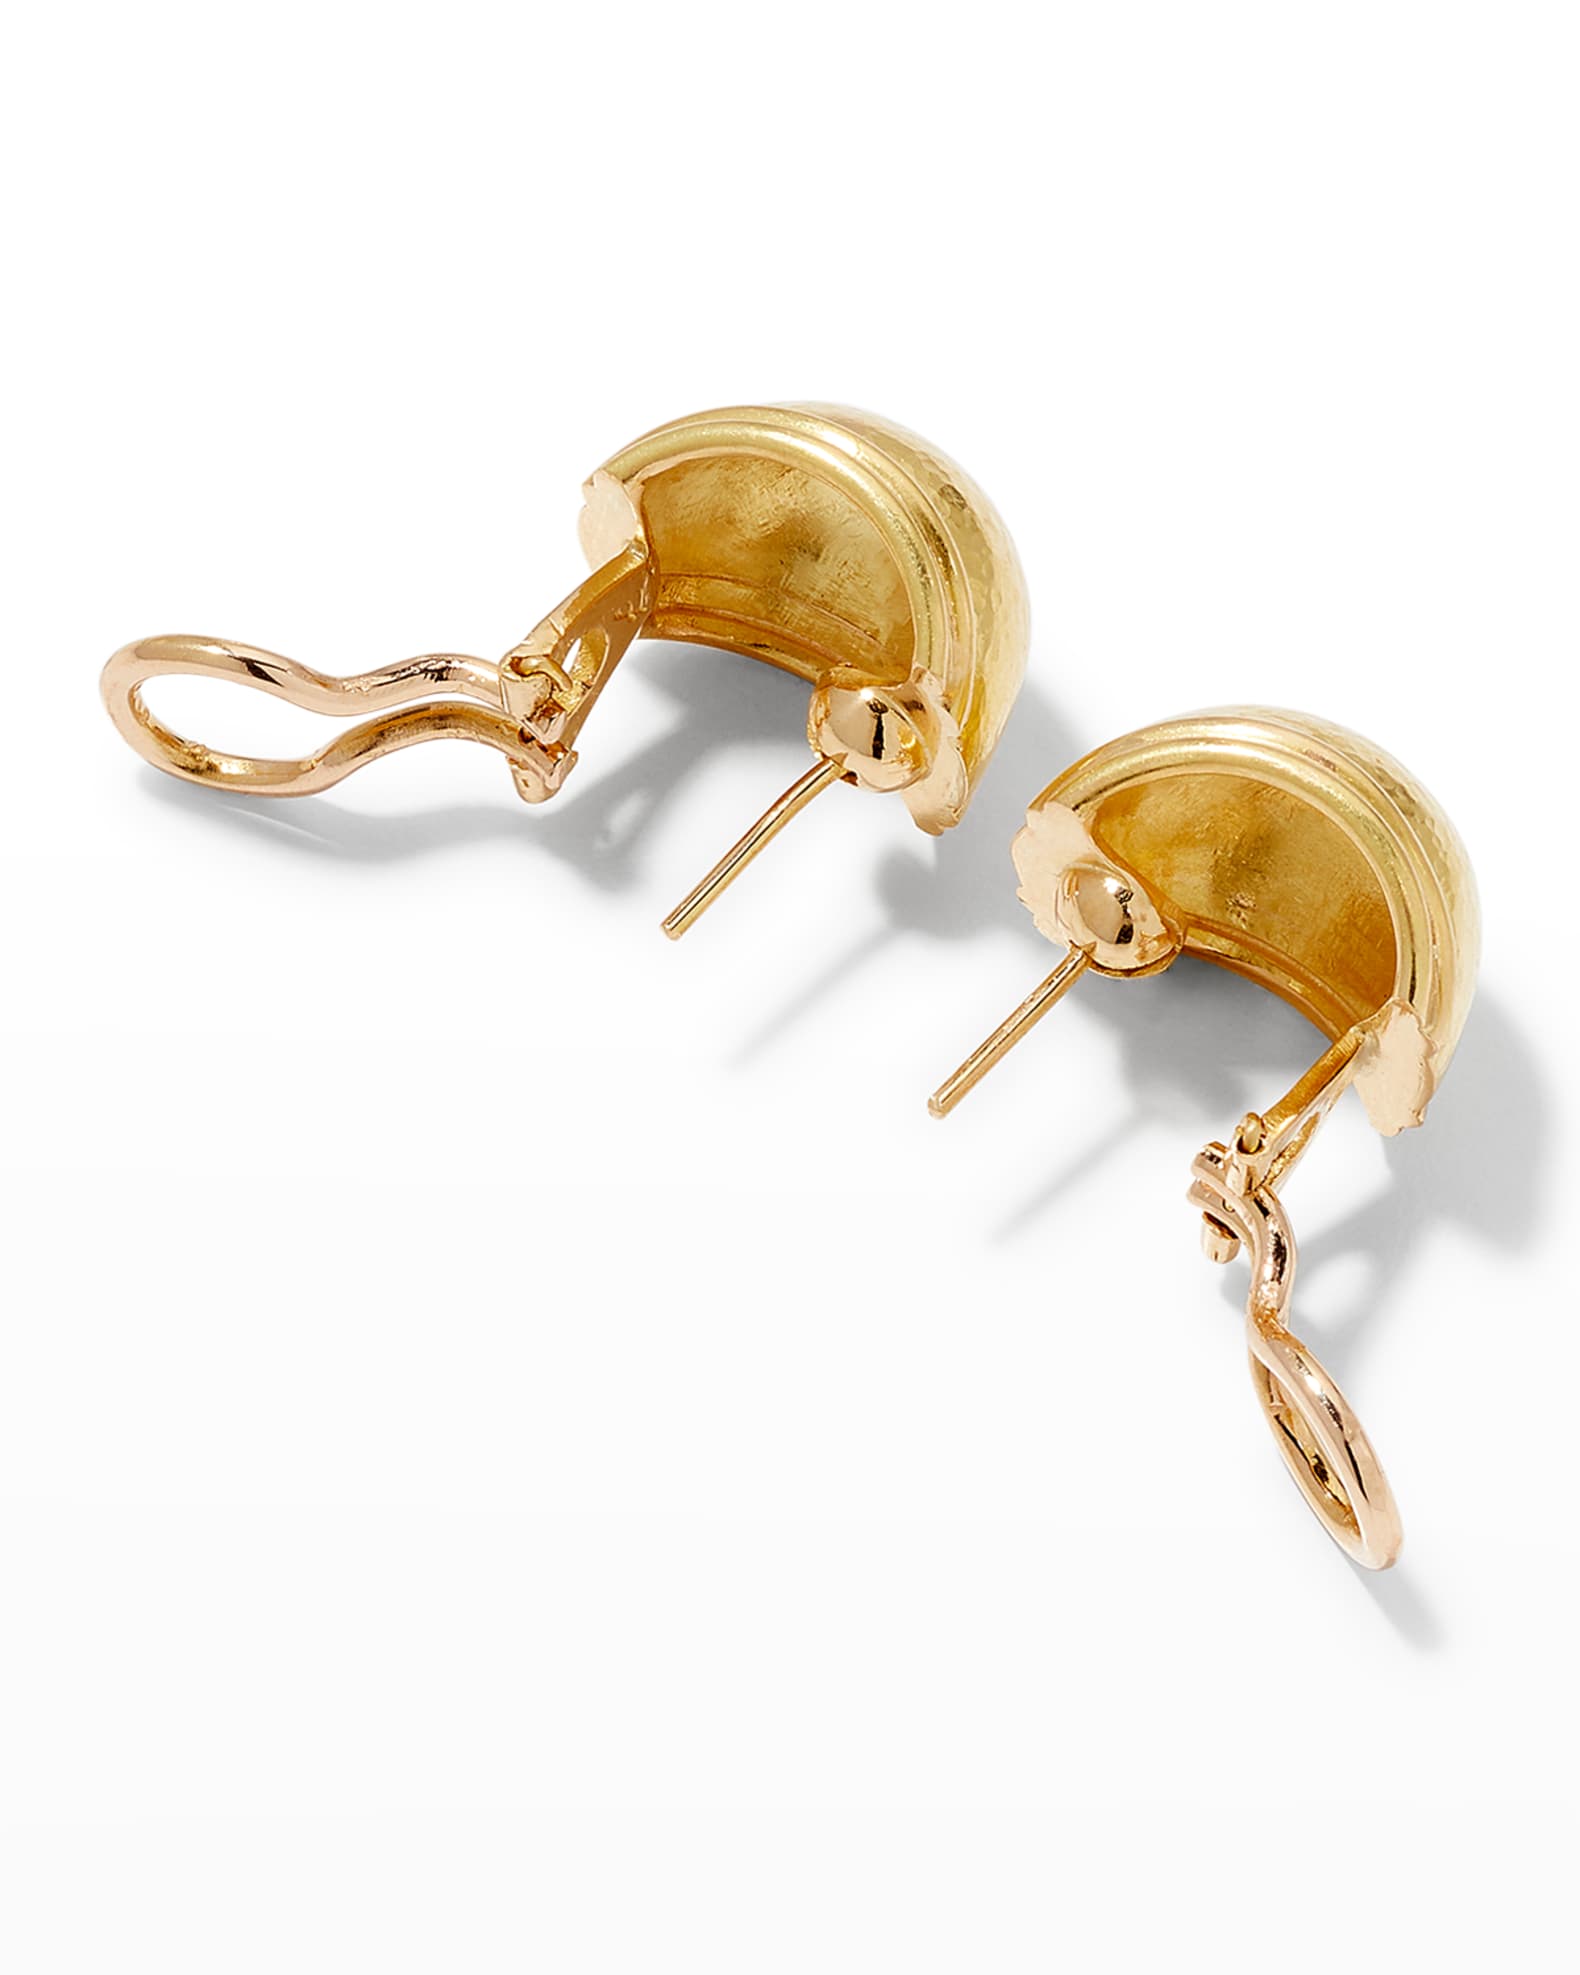 Elizabeth Locke 19k Gold Small Puff Earrings | Neiman Marcus